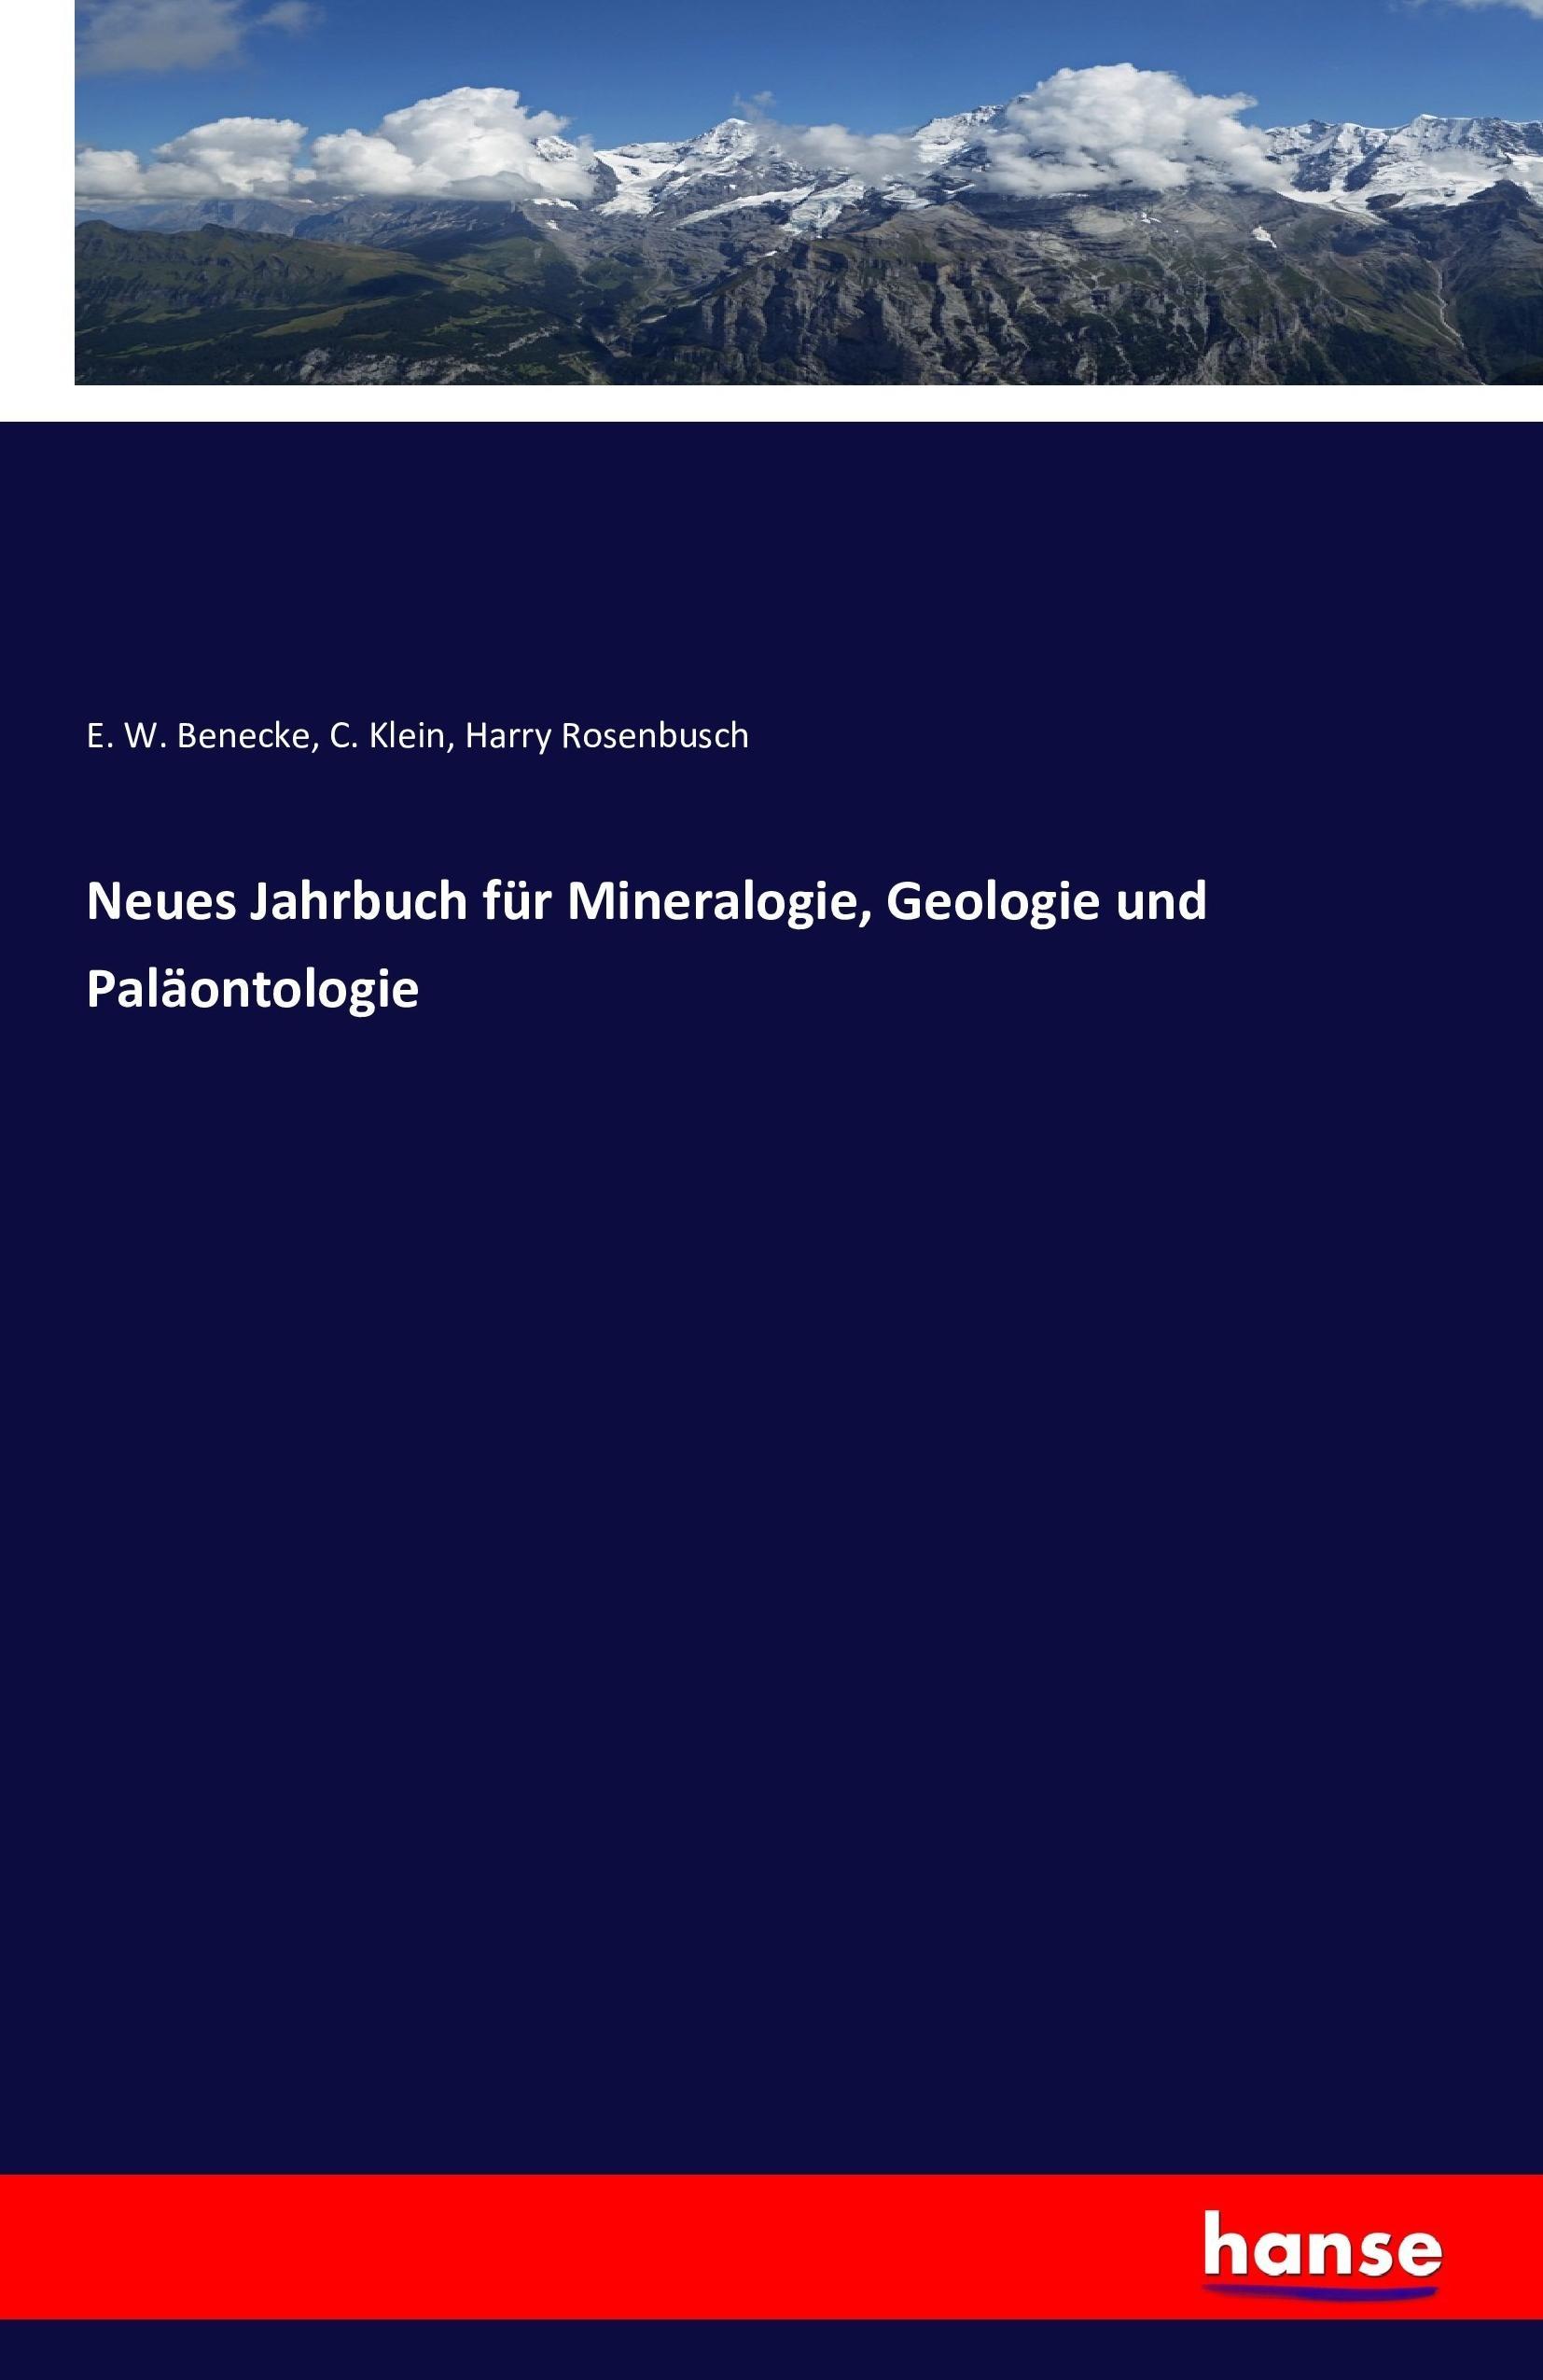 Neues Jahrbuch fuer Mineralogie, Geologie und Palaeontologie - Benecke, E. W. Klein, C. Rosenbusch, Harry